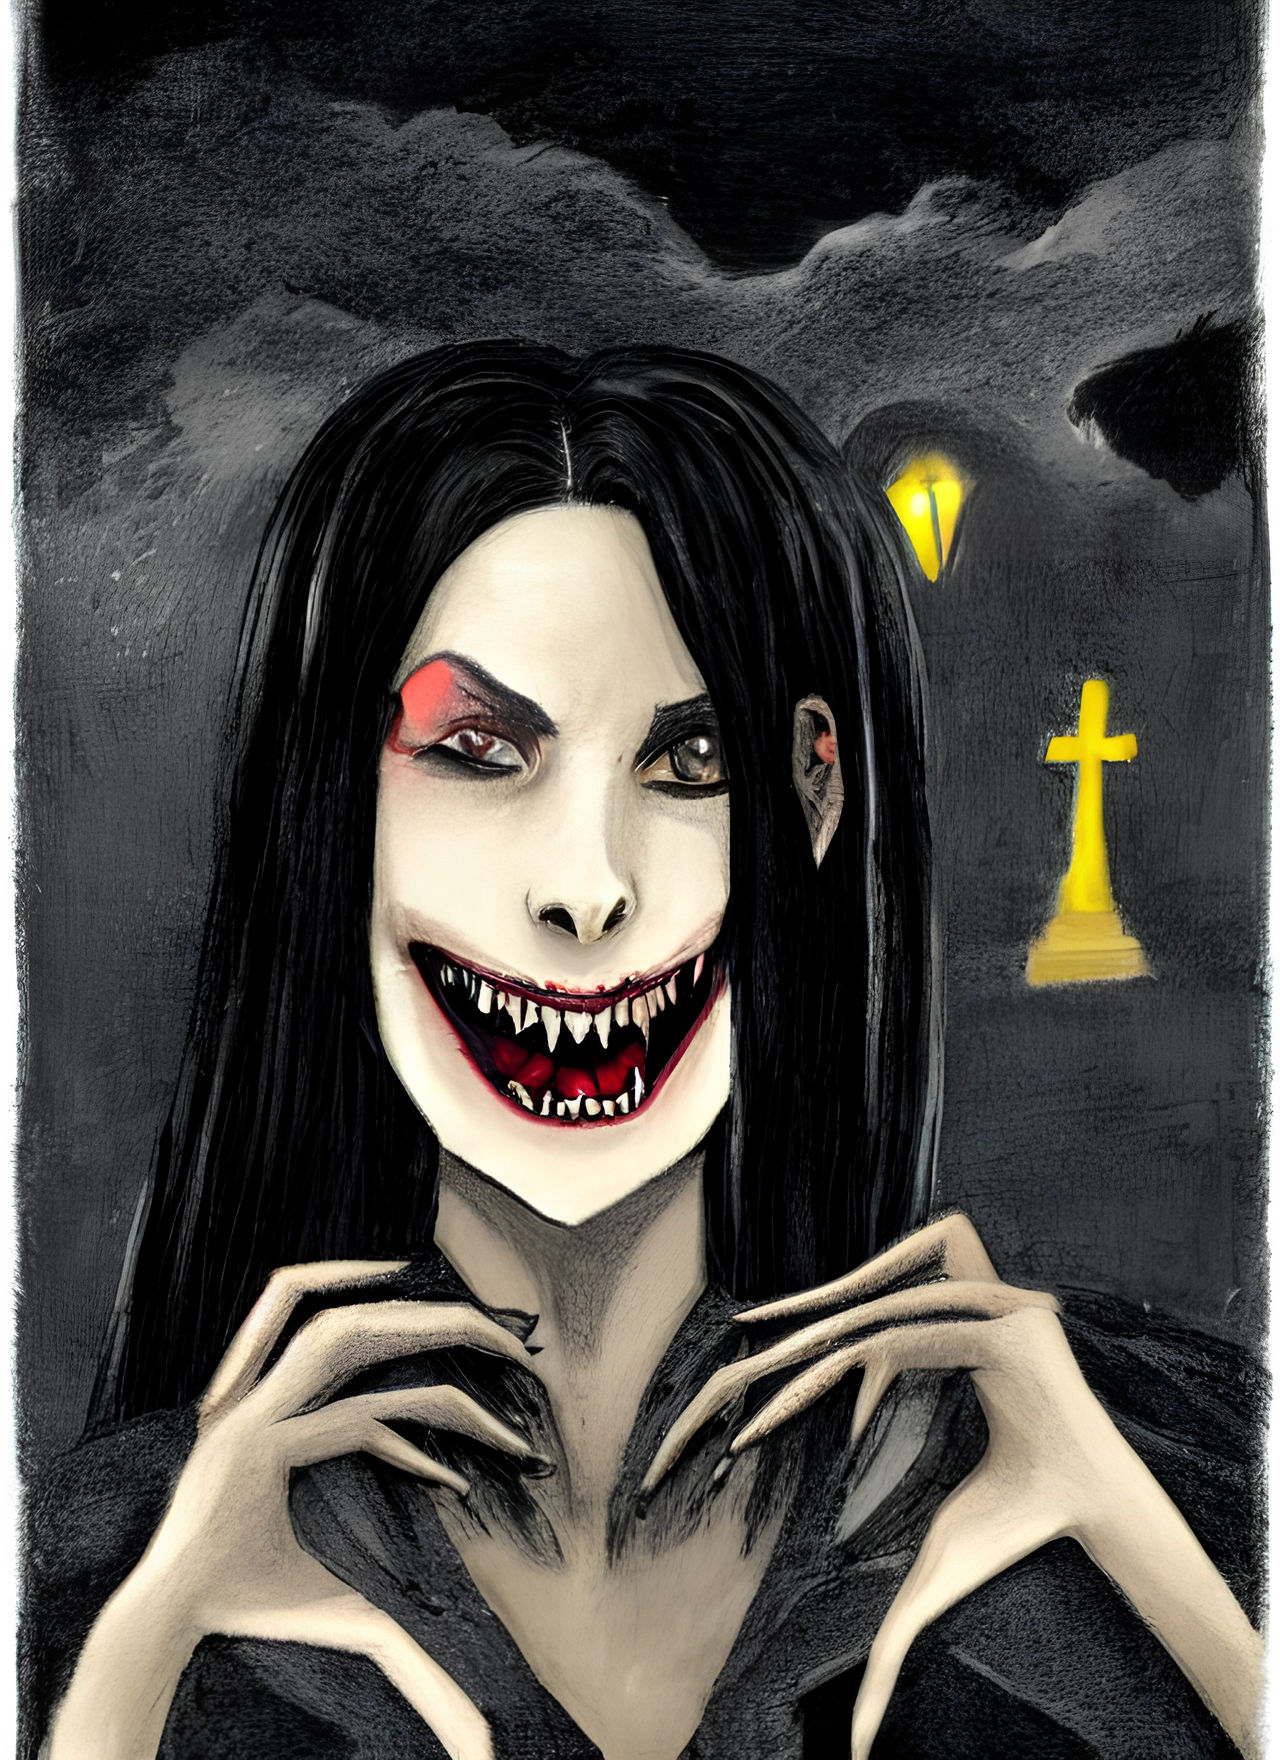 Creepy Maiden 2 by Thepermman on DeviantArt